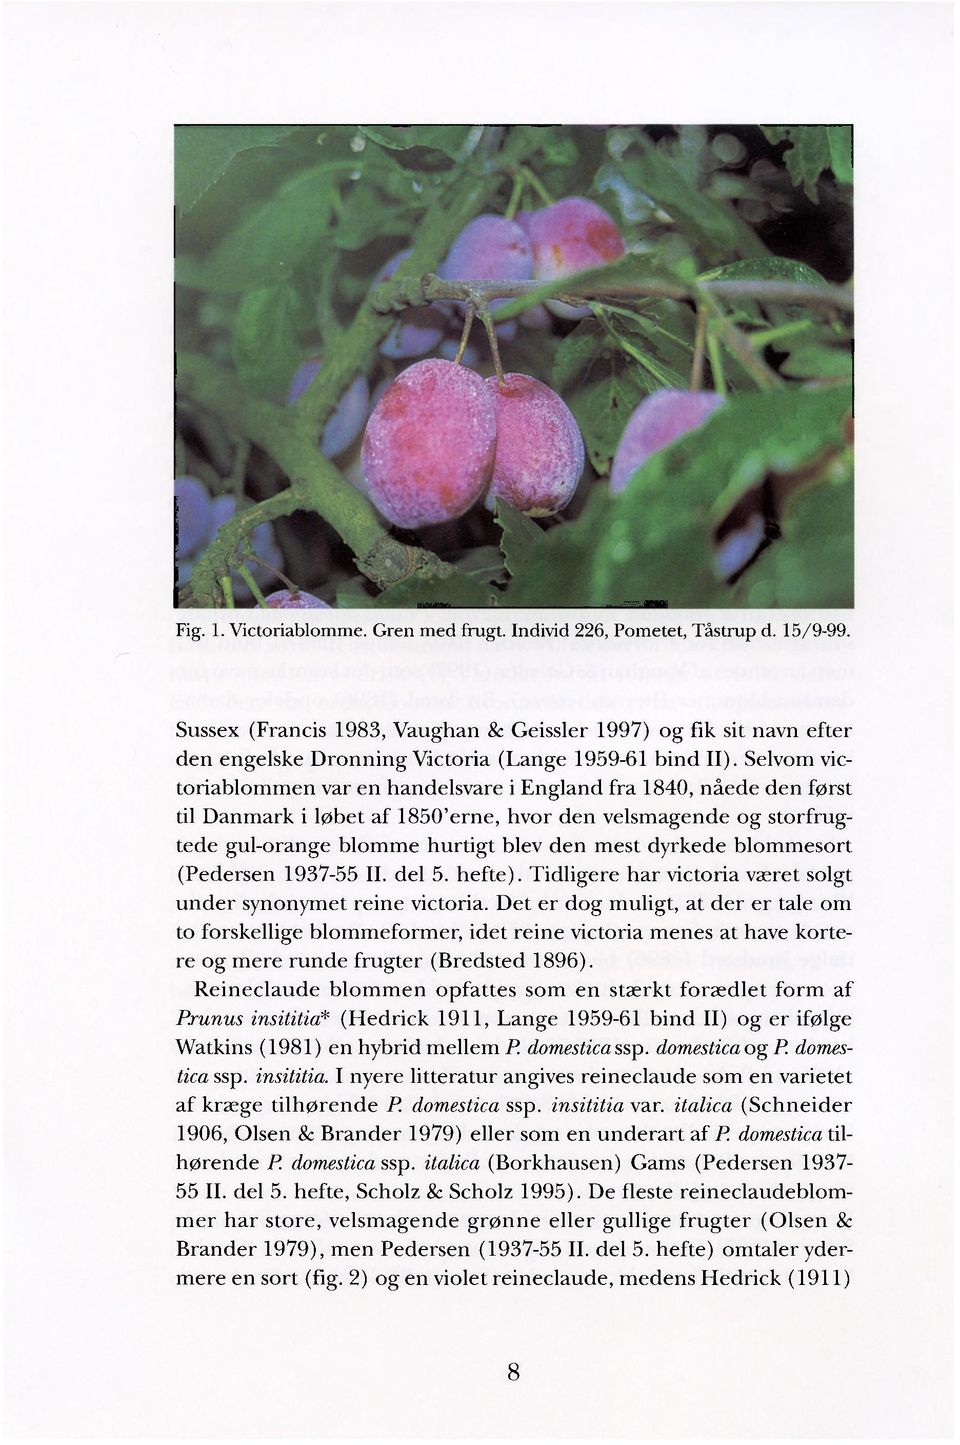 Selvom victoriablommen var en handelsvare i England fra 1840, nåede den først til Danmark i løbet af 1850'erne, hvor den velsmagende og storfrugtede gul-orange blomme hurtigt blev den mest dyrkede